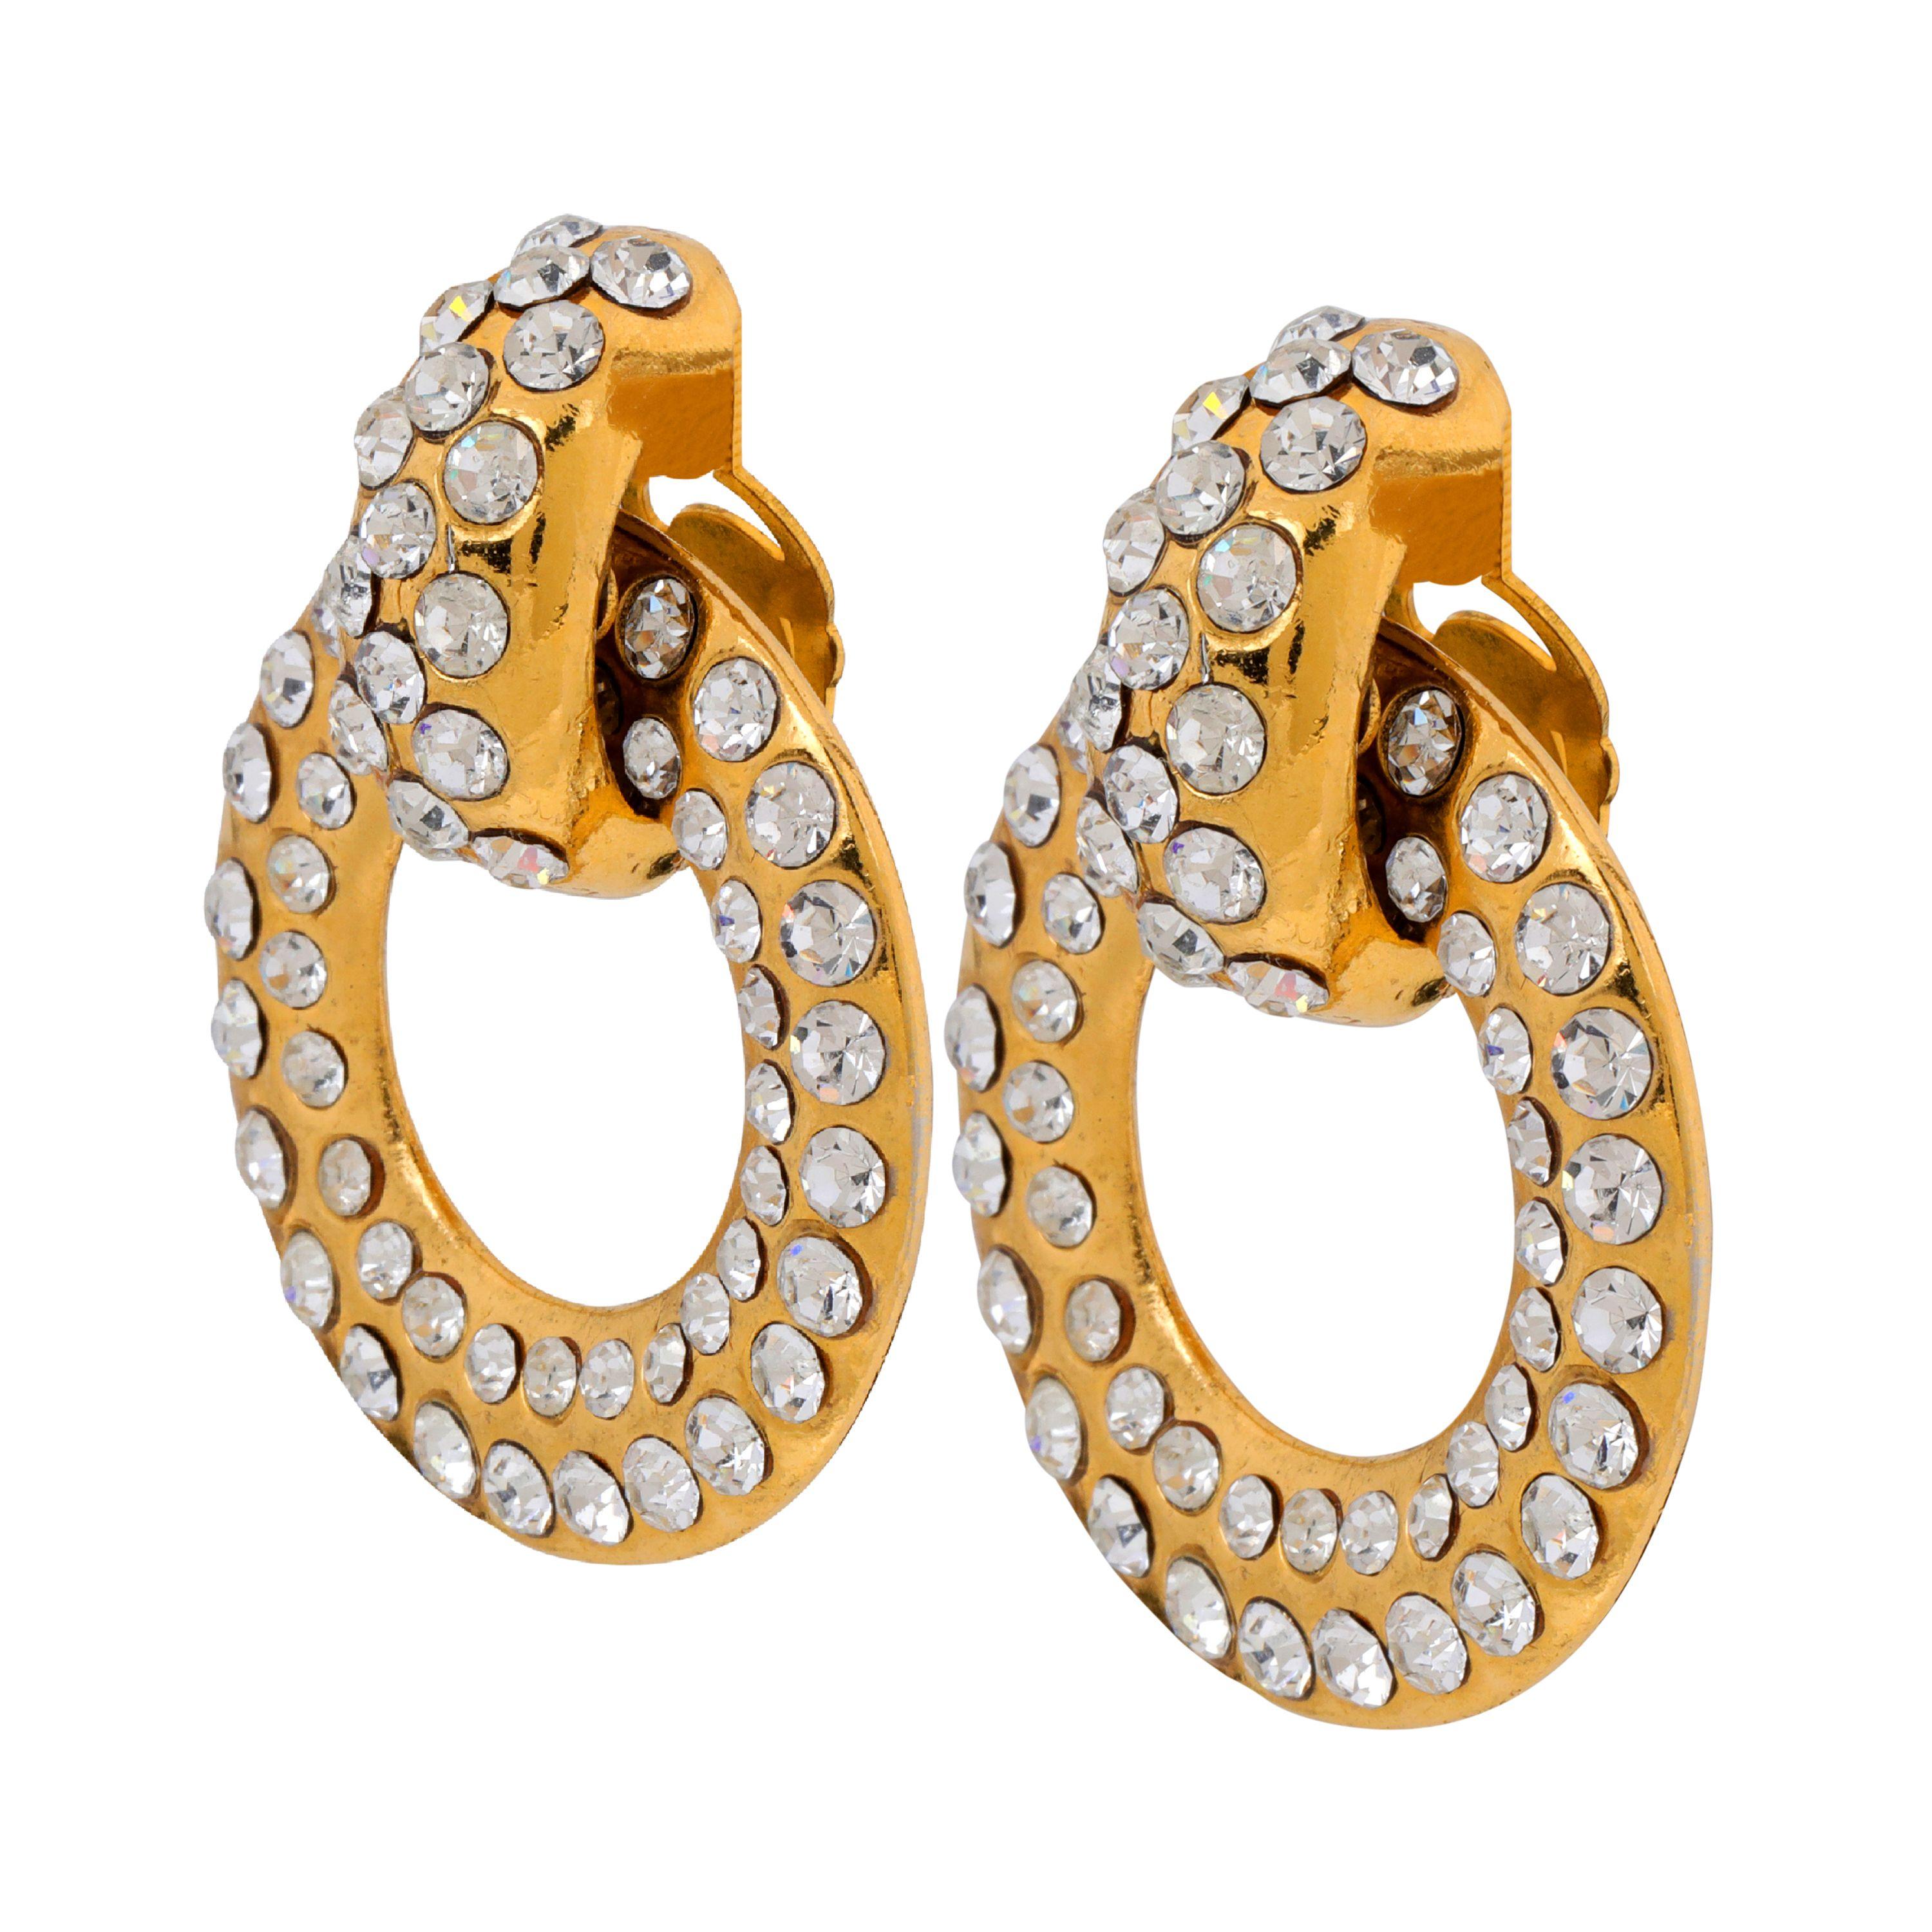 Diese sind authentisch. Chanel Gold Crystal Huggie Hoops sind in ausgezeichnetem Vintage-Zustand aus den späten 1980er Jahren. Nach vorne gerichtete goldfarbene Reifchen sind mit funkelnden Kristallen besetzt.  Clipverschluss.  Hergestellt in